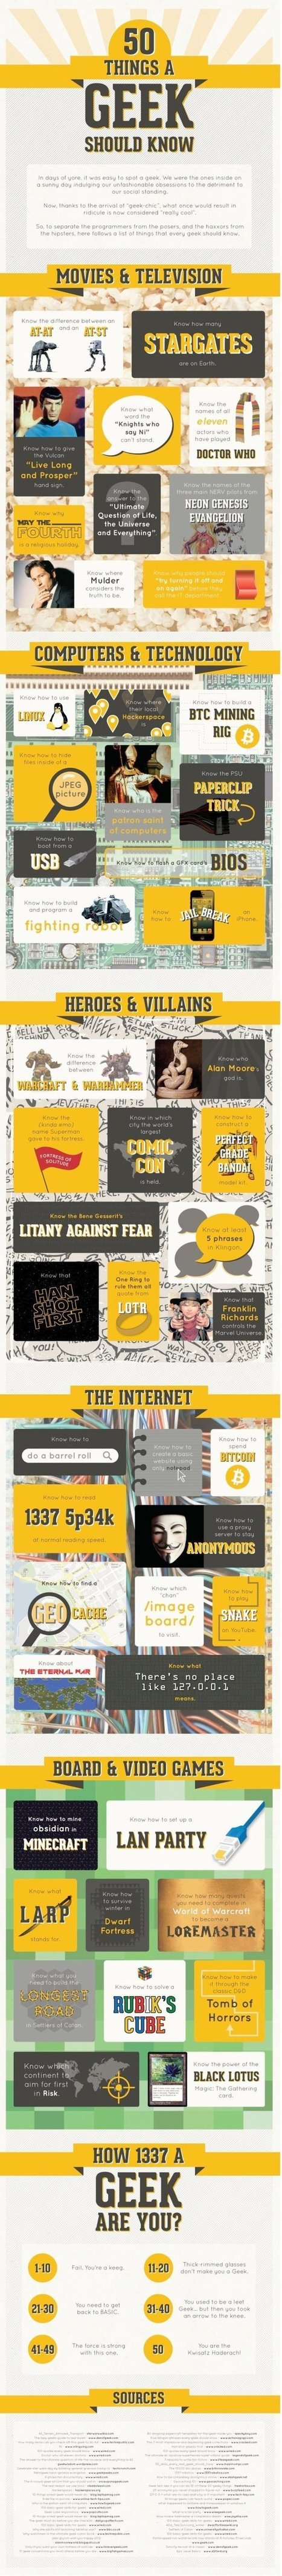 50 Things a Geek Should (Apparently) Know [Infographic] | Cabinet de curiosités numériques | Scoop.it